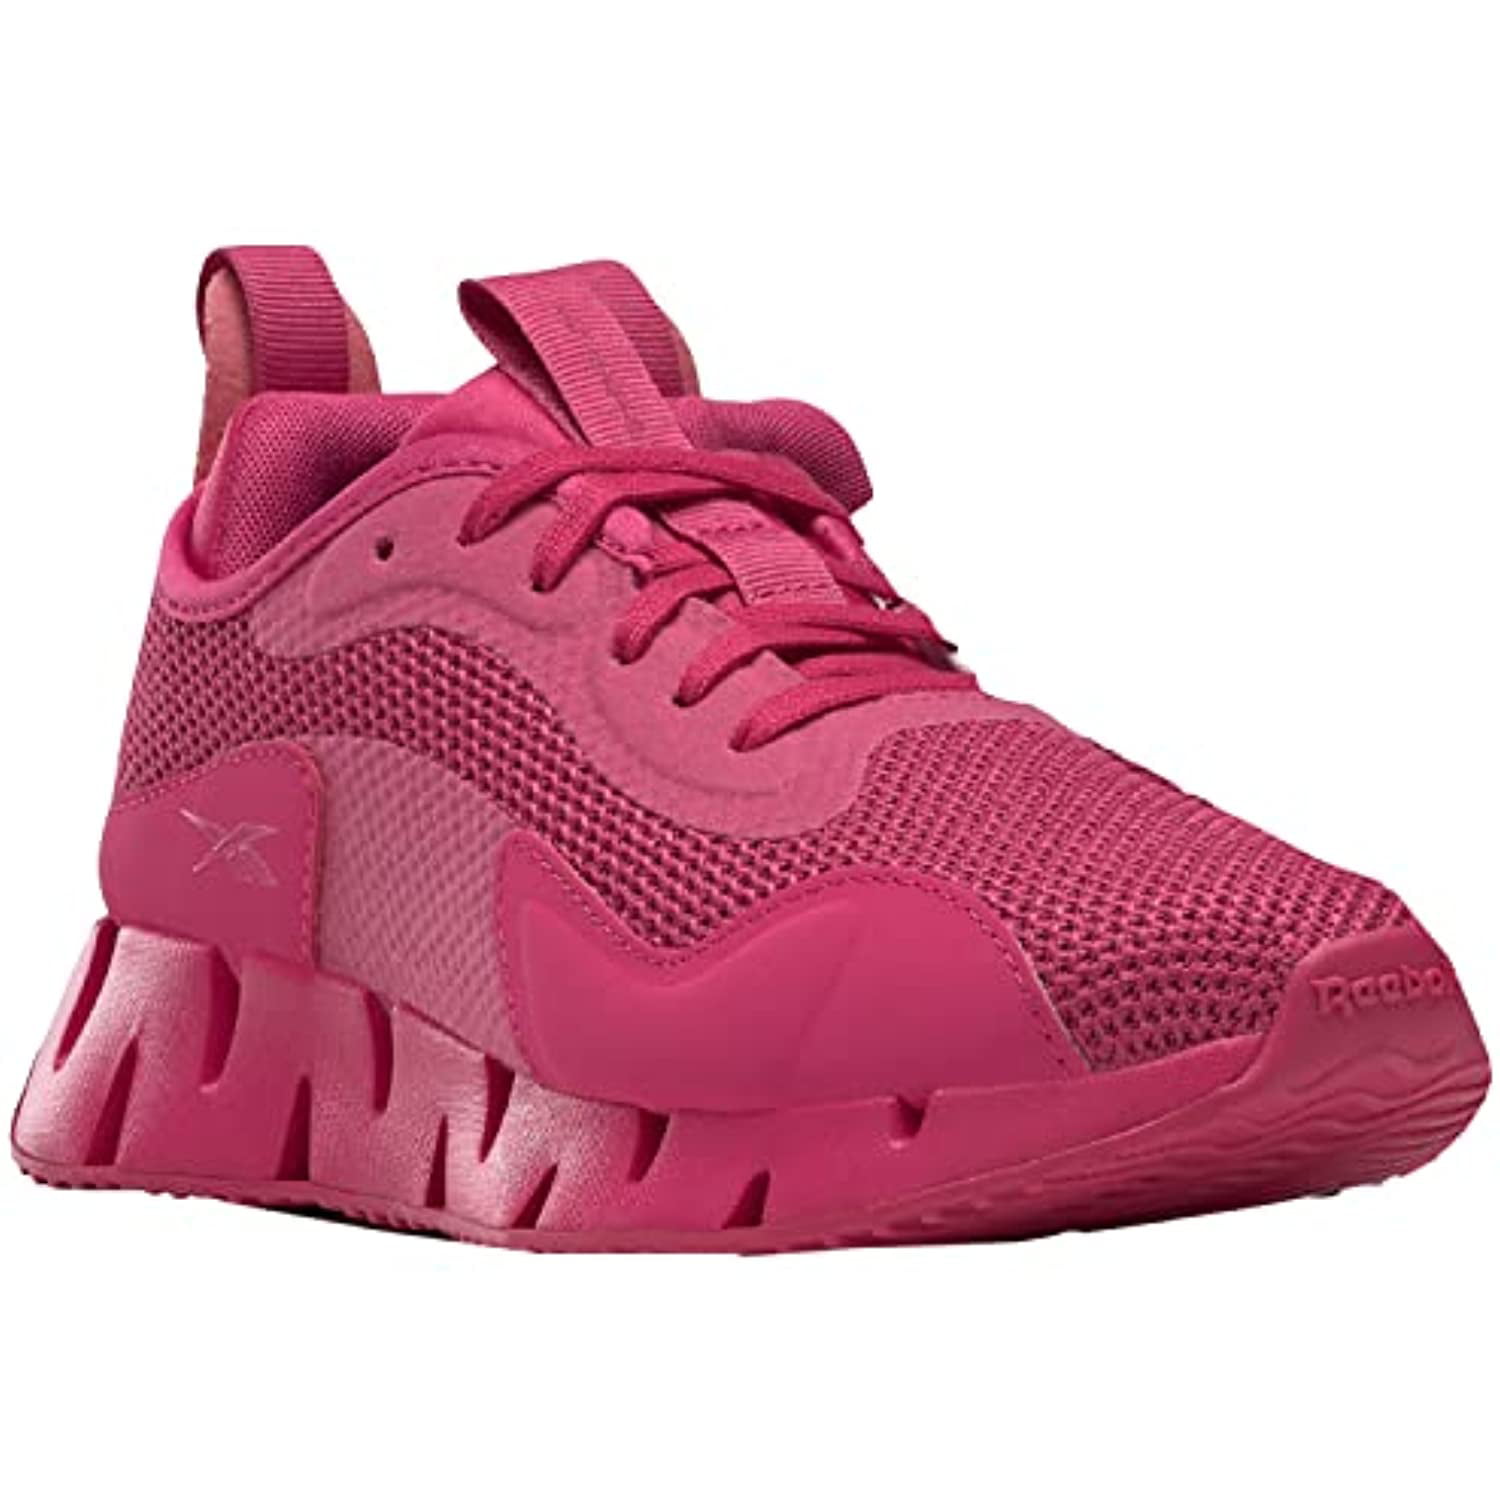 Reebok Women's Fluxlite Training Shoes in Pink - Size 8.5